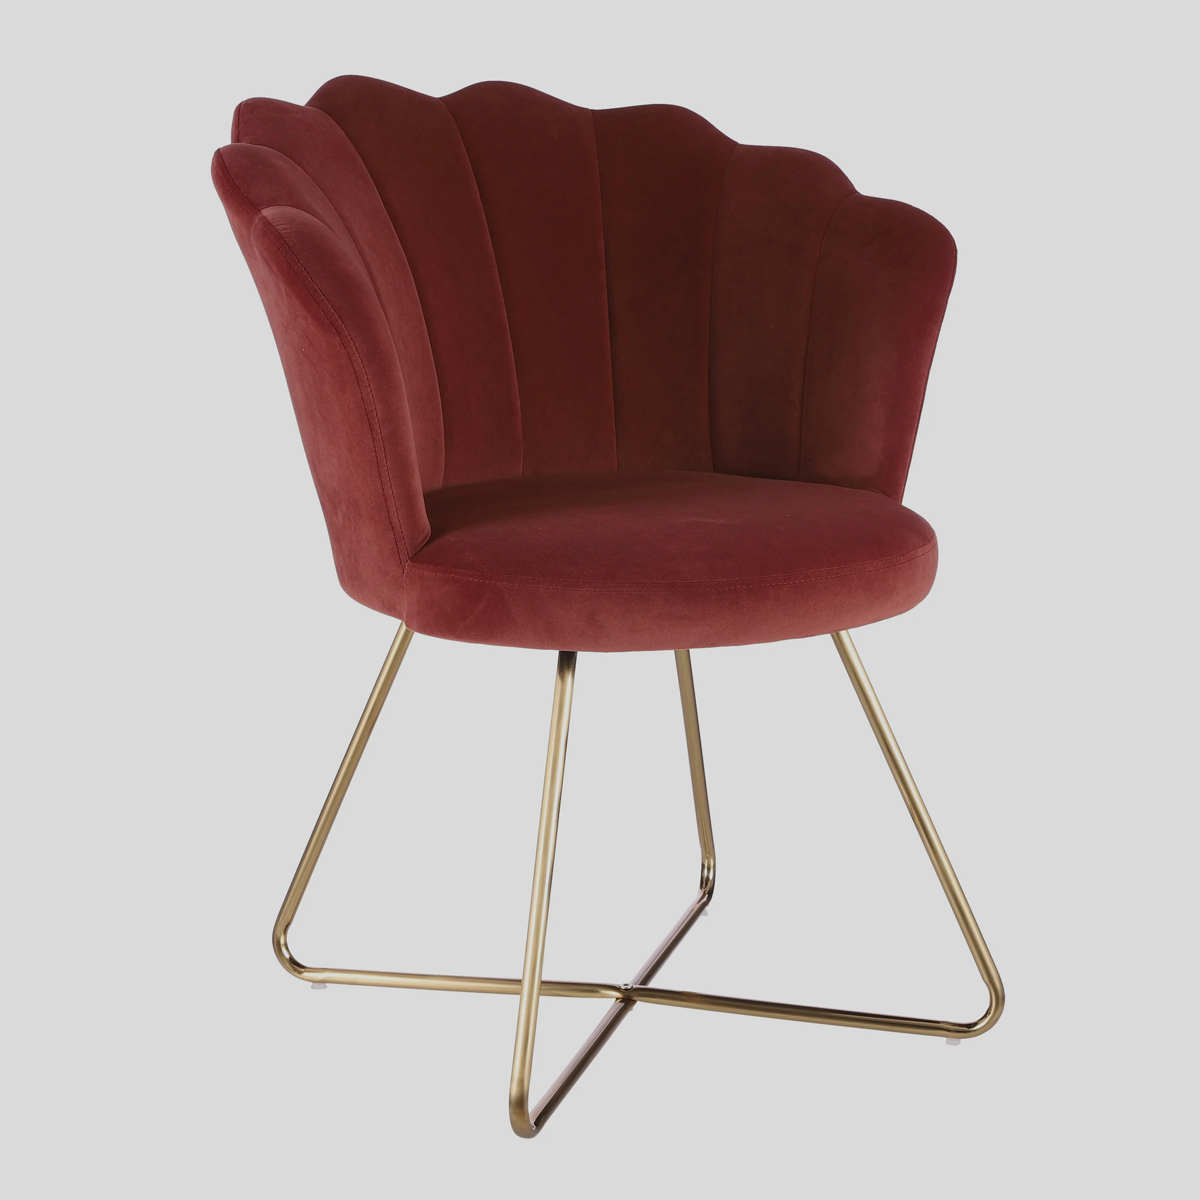 Het goudkleurige onderstel van messing geeft deze rood-roze stoel van velours extra glans. 